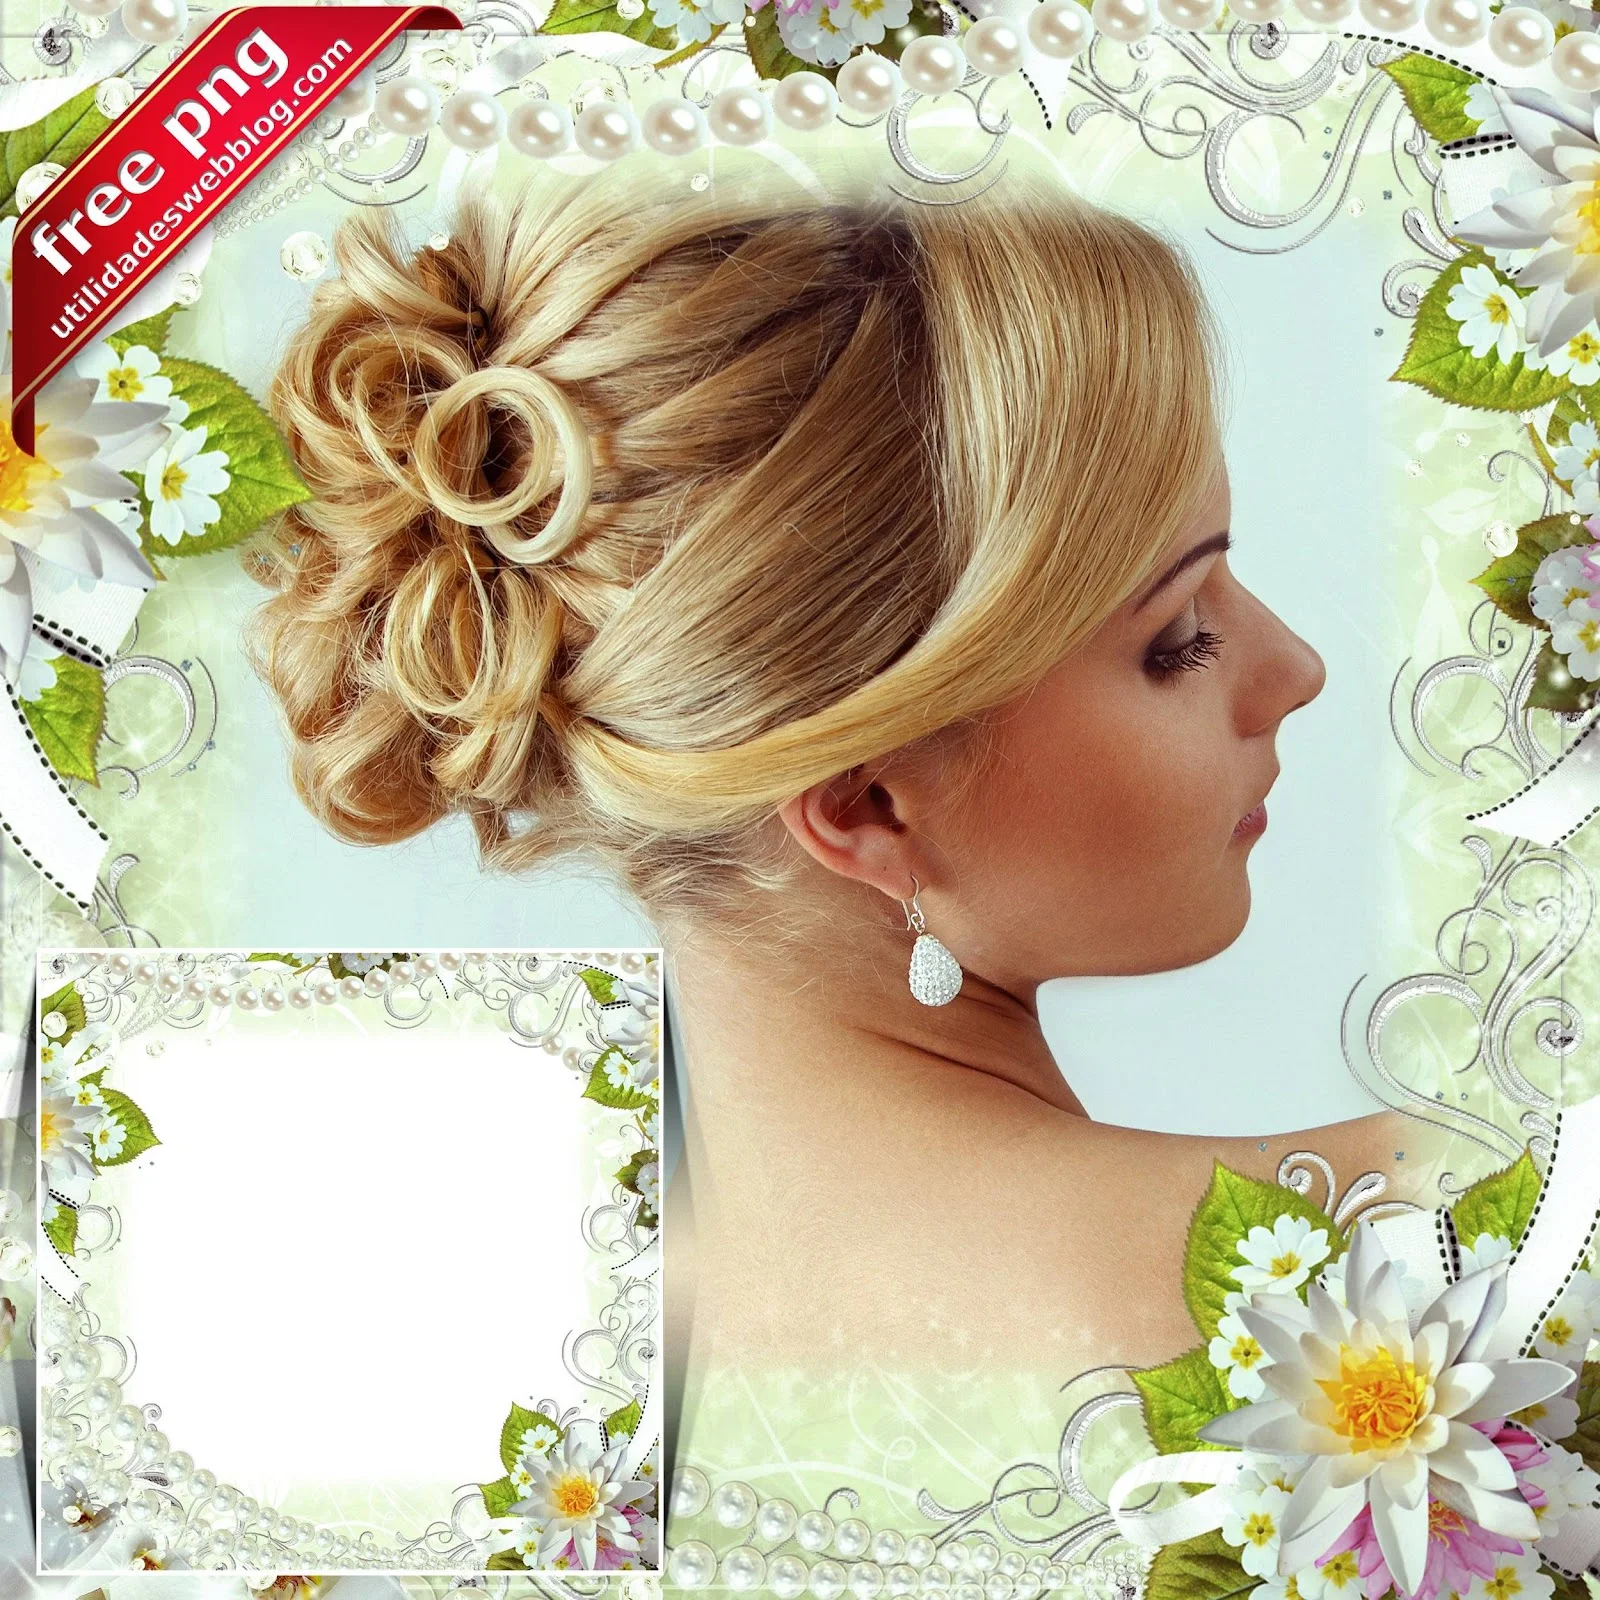 Marco elegante de boda con flores blancas, perlas y listones, perfecto para inmortalizar el amor en el gran día.